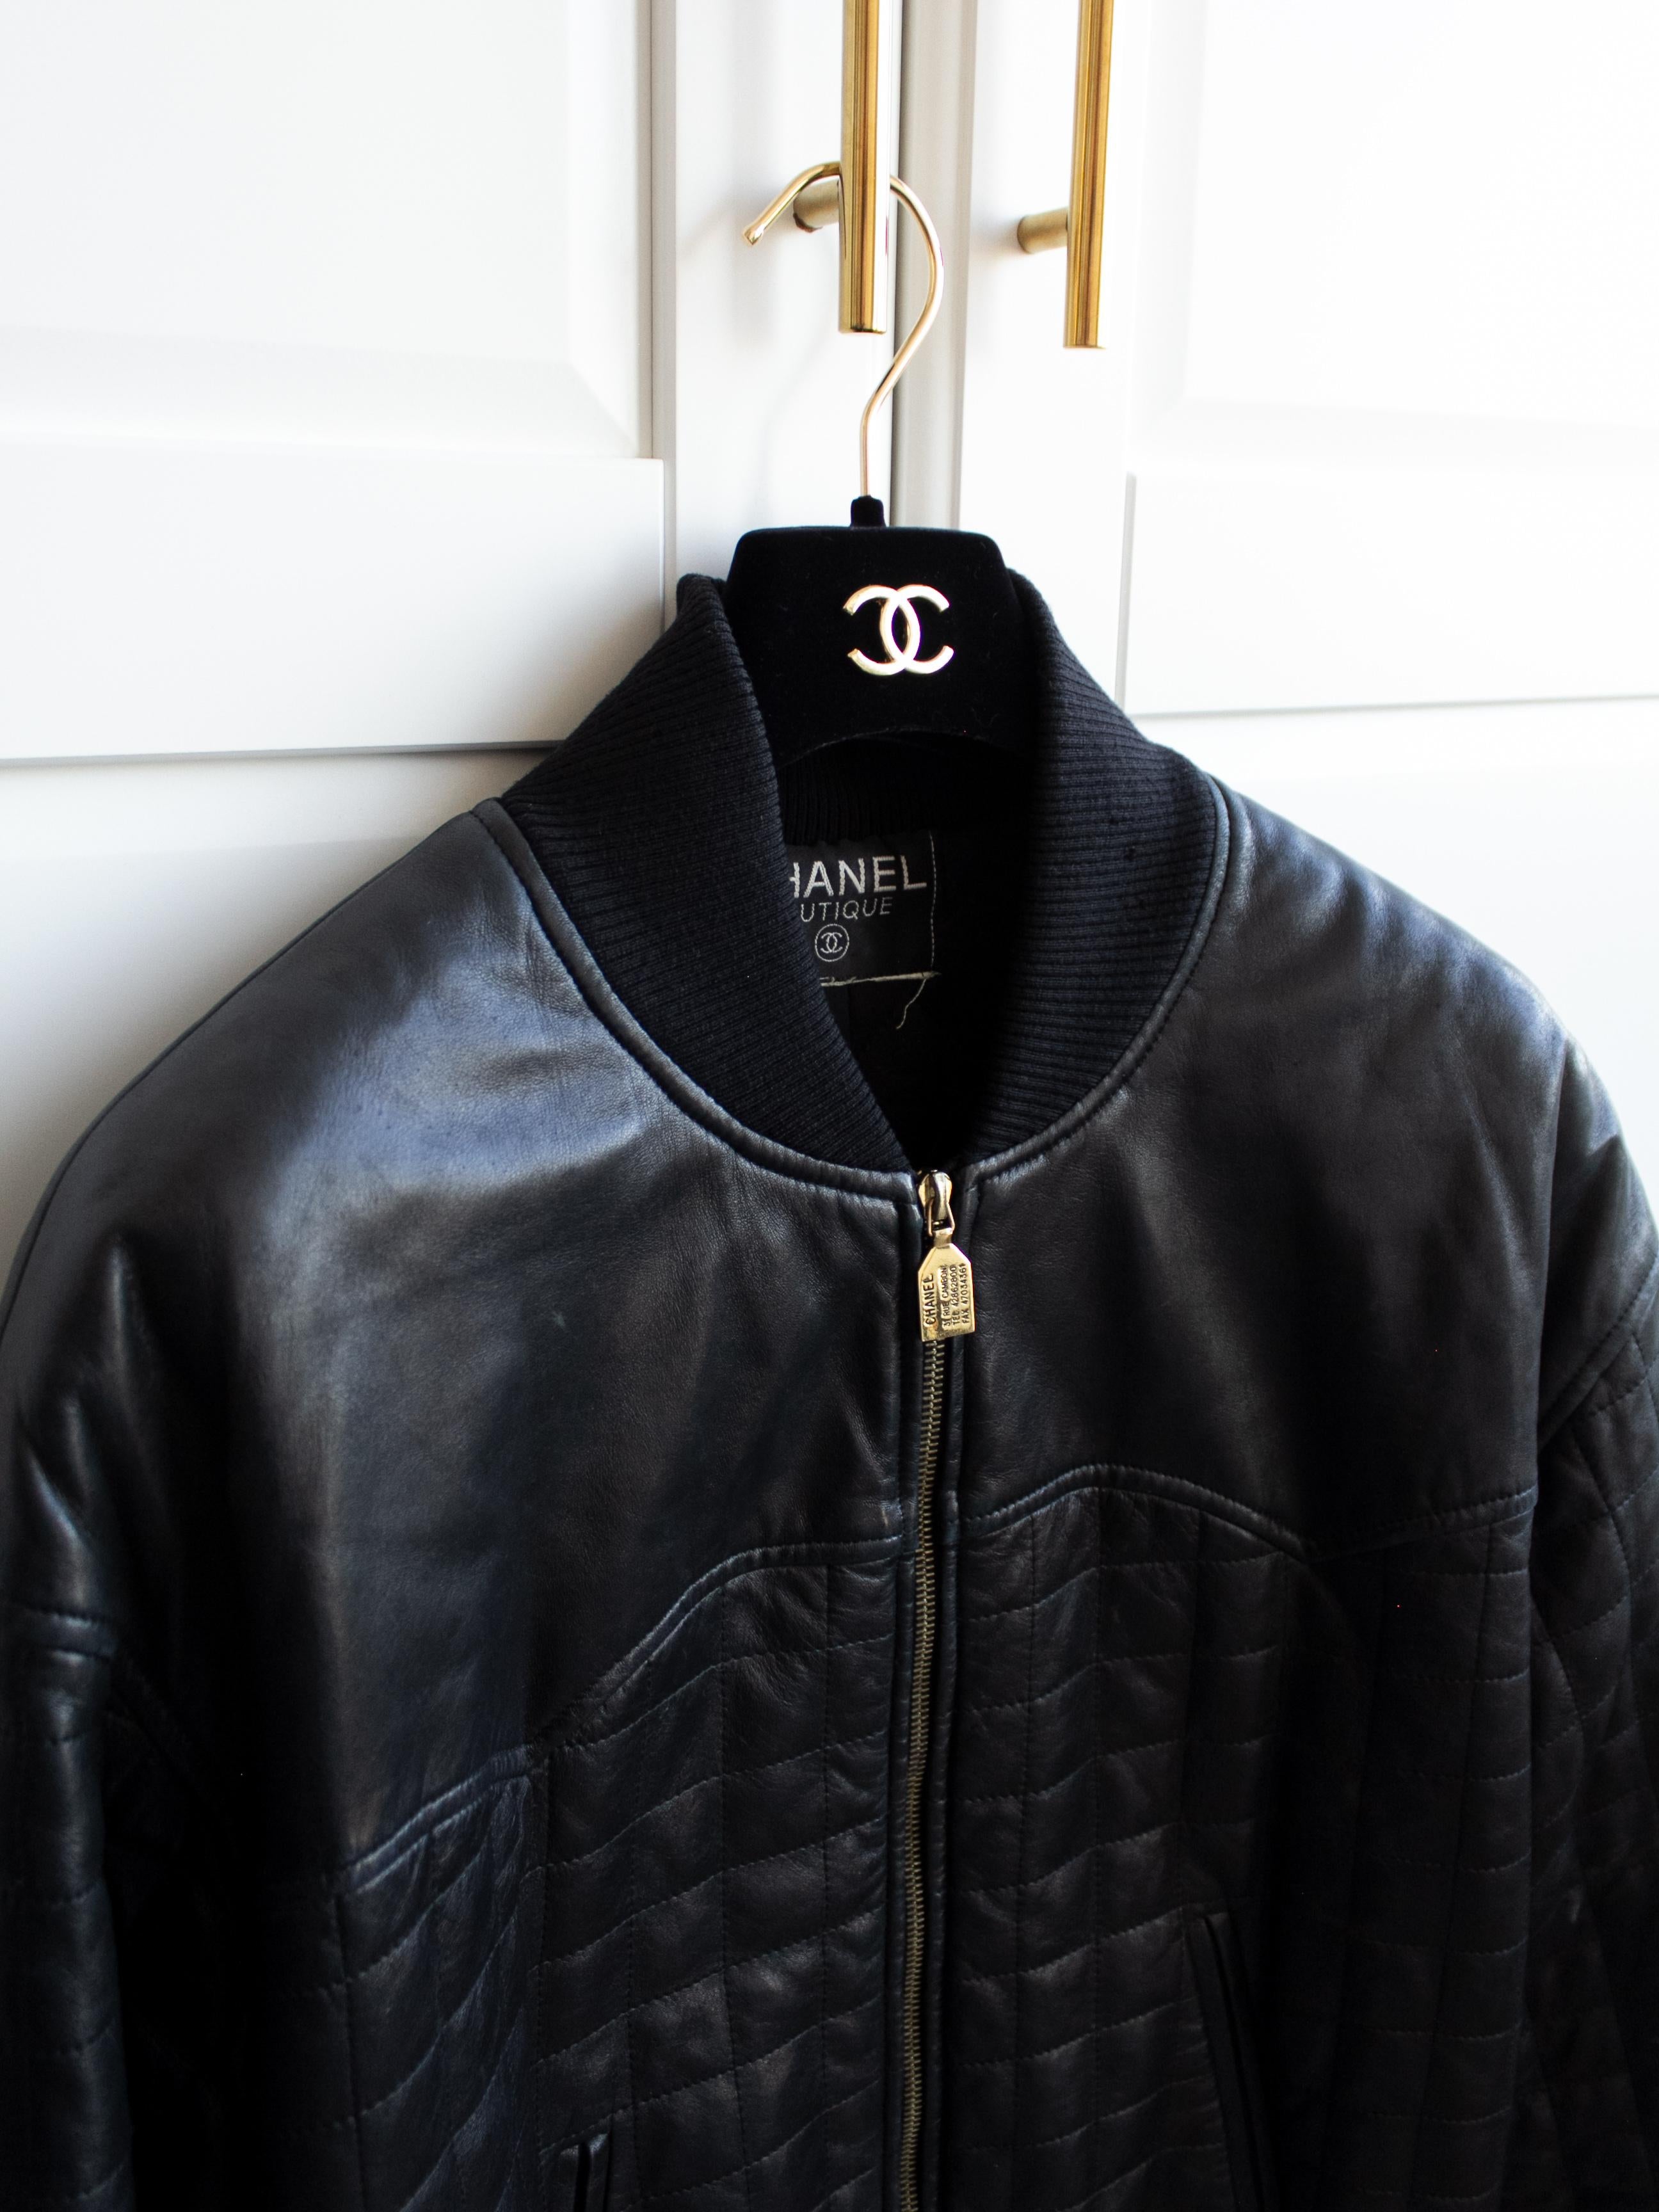 Chanel Vintage Fall 1991 Hip-Hop Black Gold Quilted Leather Moto Biker Jacket 2